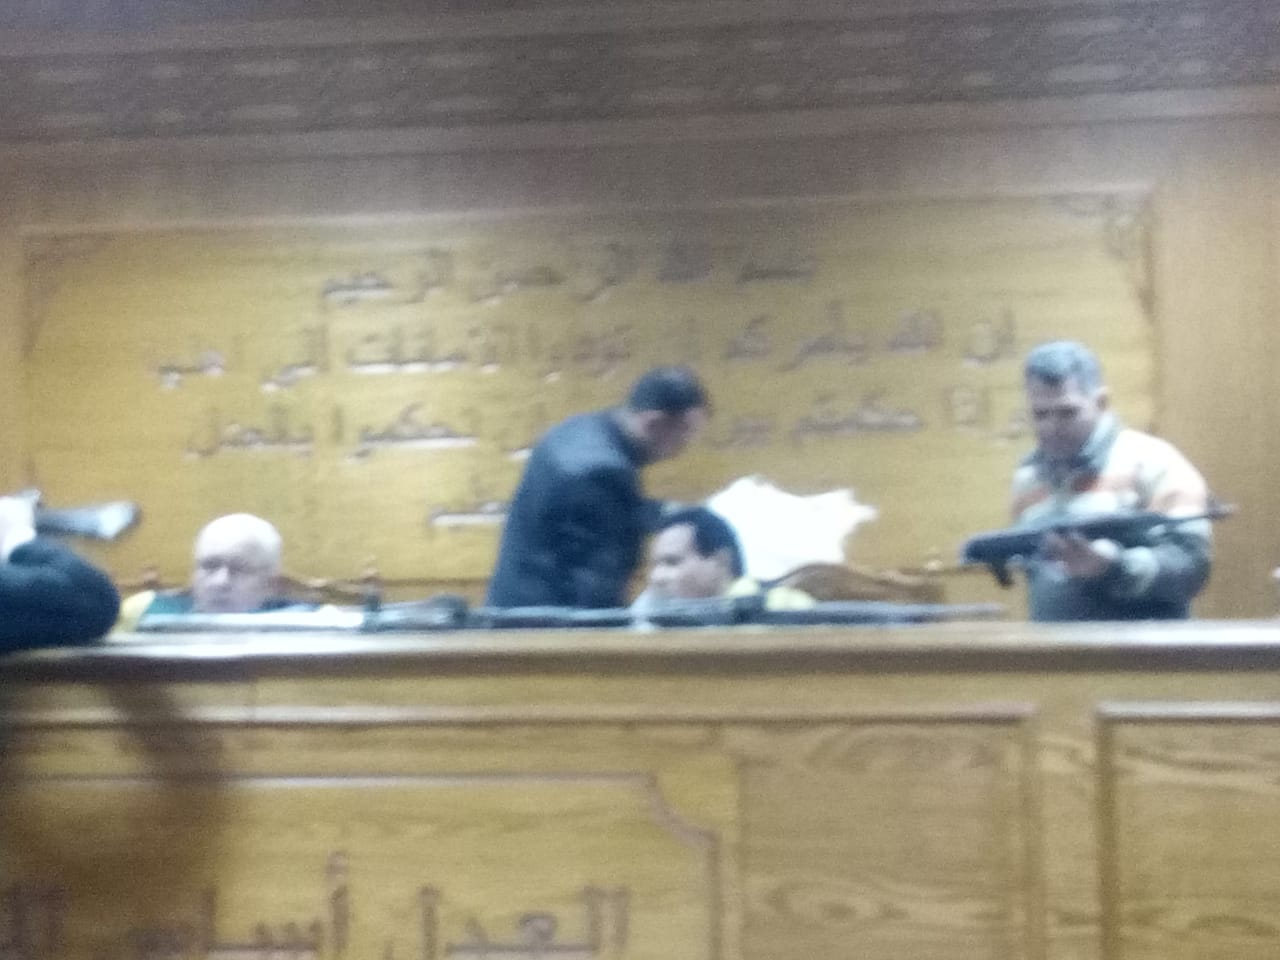 هيئة المحكمة برئاسة المستشار محمد سعيد الشربينى تفض احراز العائدون من ليبيا (5)